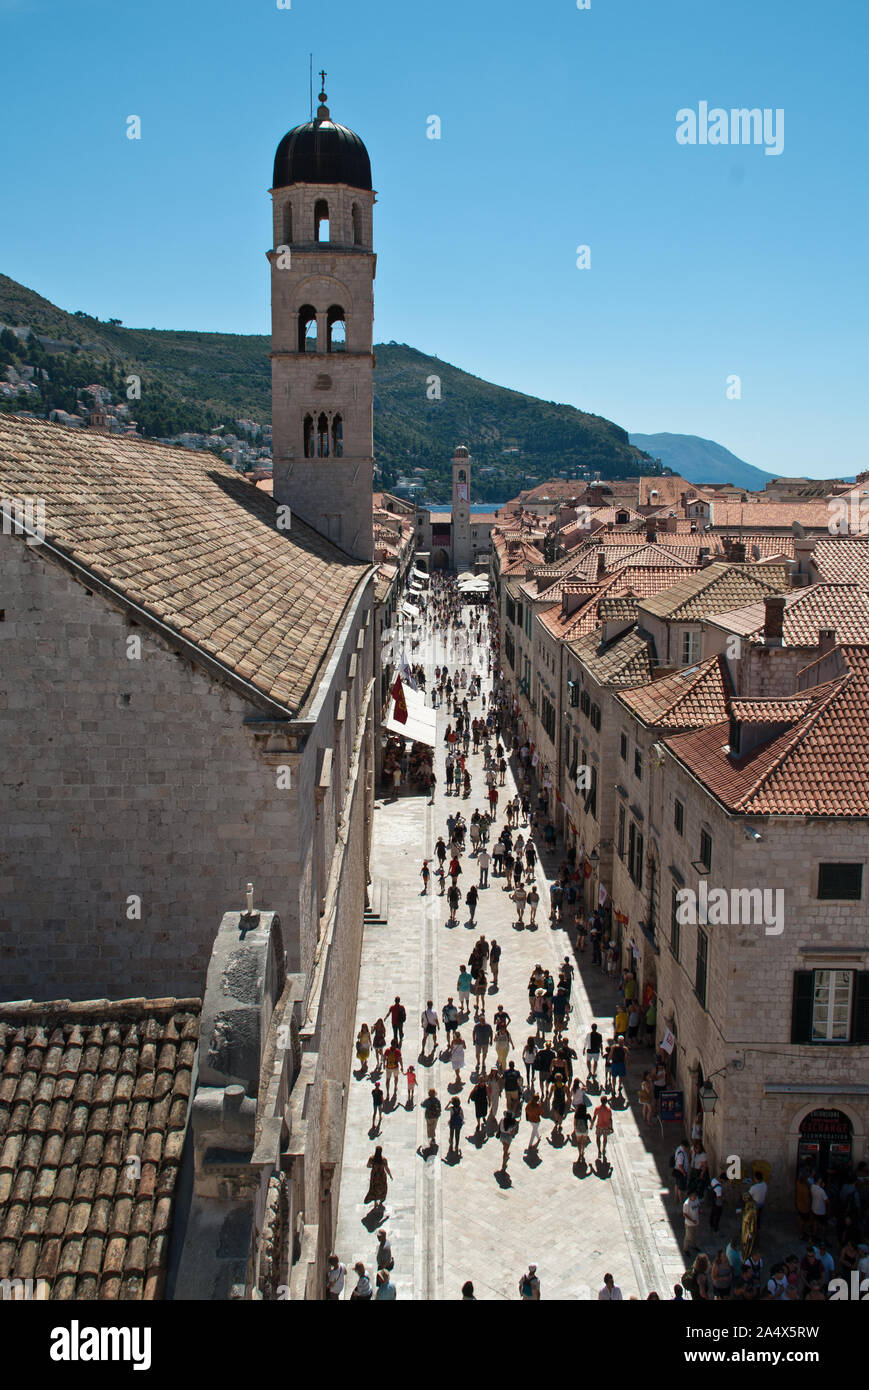 Areal vue de la rue principale Stradun dans la vieille ville de Dubrovnik, Croatie. La rue piétonne pavée de calcaire s'exécute environ 300 mètres par la lo Banque D'Images